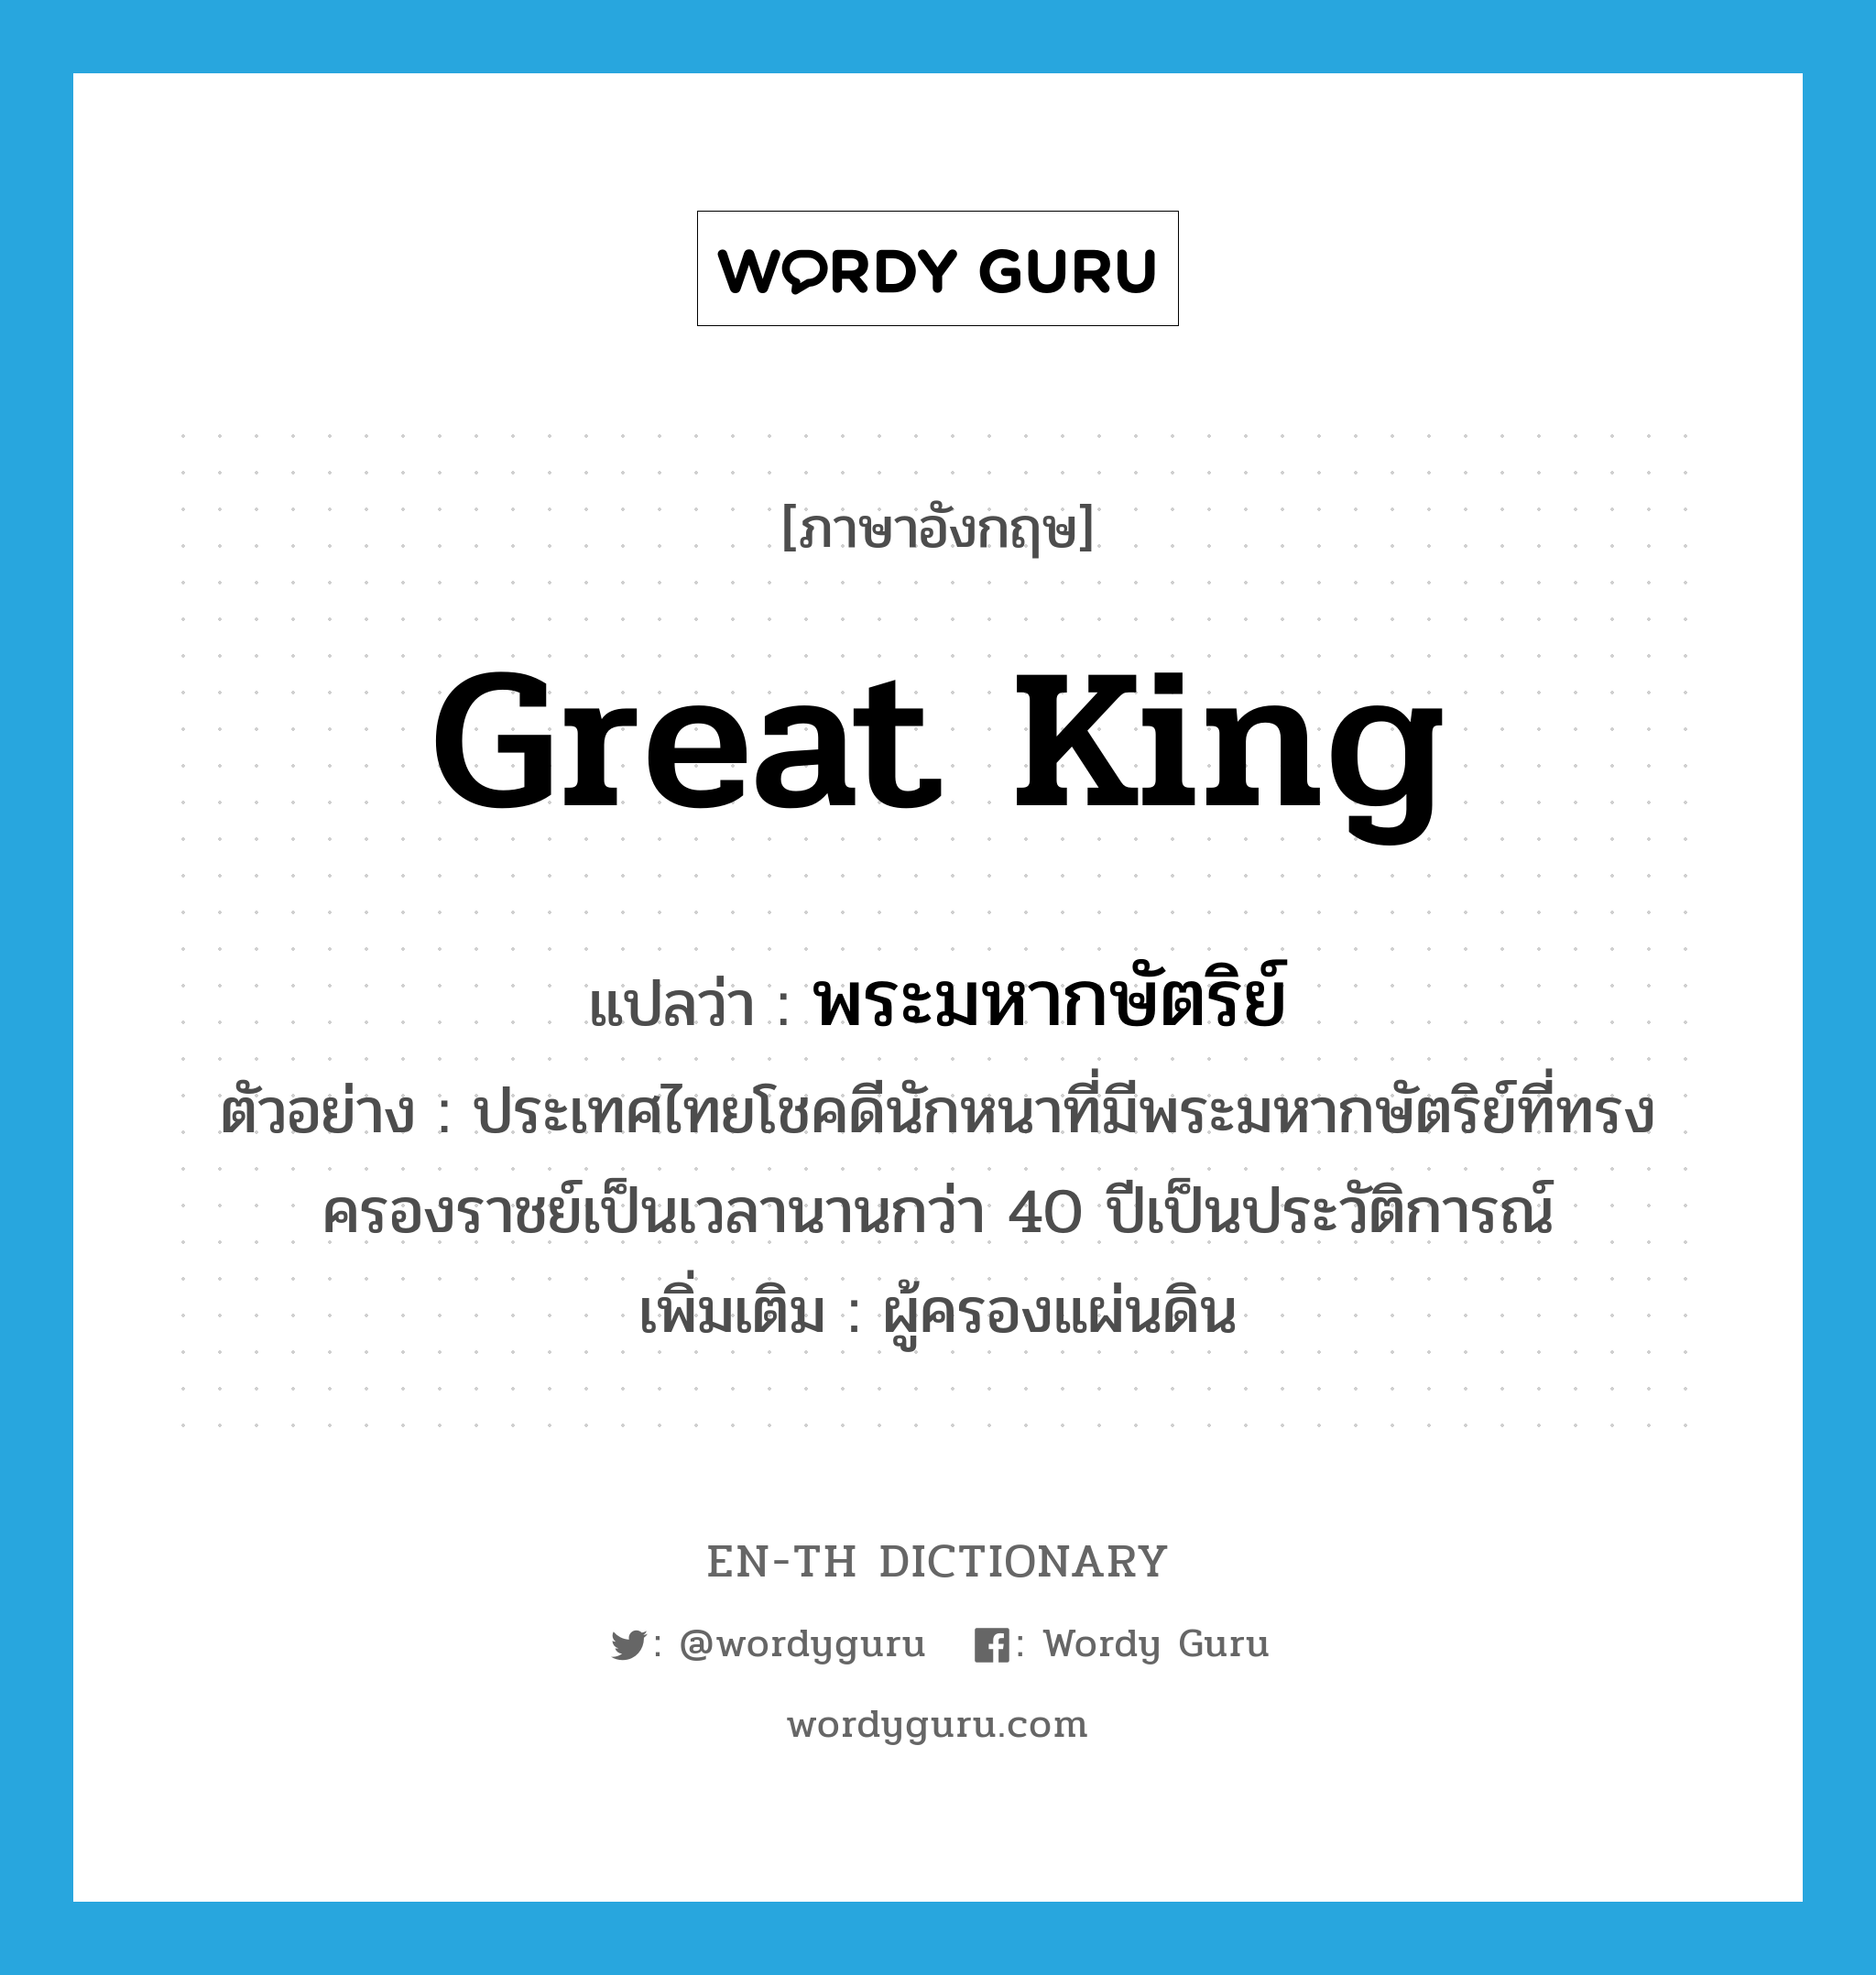 พระมหากษัตริย์ ภาษาอังกฤษ?, คำศัพท์ภาษาอังกฤษ พระมหากษัตริย์ แปลว่า great king ประเภท N ตัวอย่าง ประเทศไทยโชคดีนักหนาที่มีพระมหากษัตริย์ที่ทรงครองราชย์เป็นเวลานานกว่า 40 ปีเป็นประวัติการณ์ เพิ่มเติม ผู้ครองแผ่นดิน หมวด N